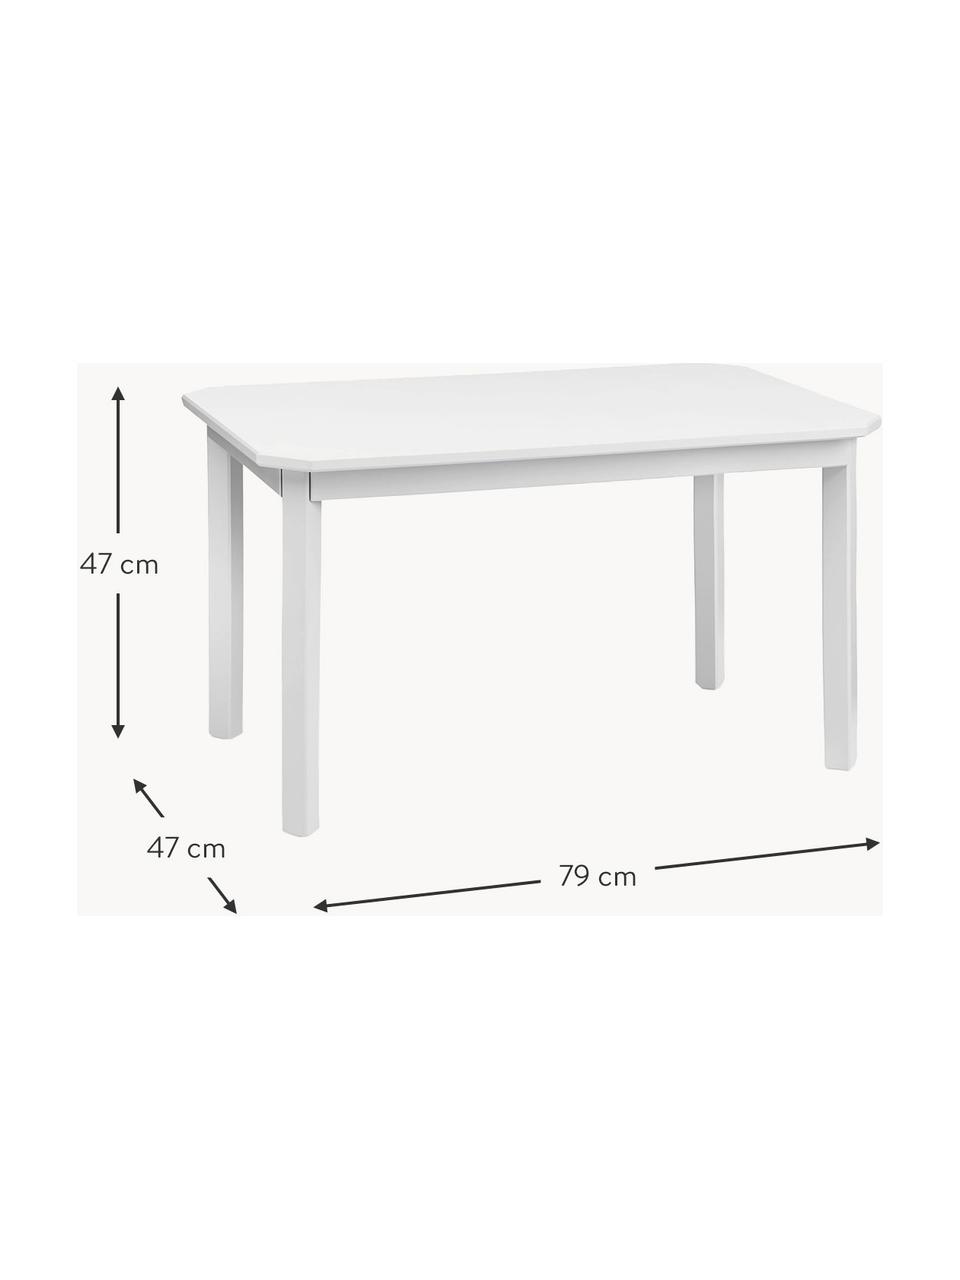 Detský drevený stôl Harlequin, Brezové drevo, drevovláknitá doska strednej hustoty (MDF), natretá farbou bez obsahu VOC, Brezové drevo, biela lakované, Š 79 x V 47 cm